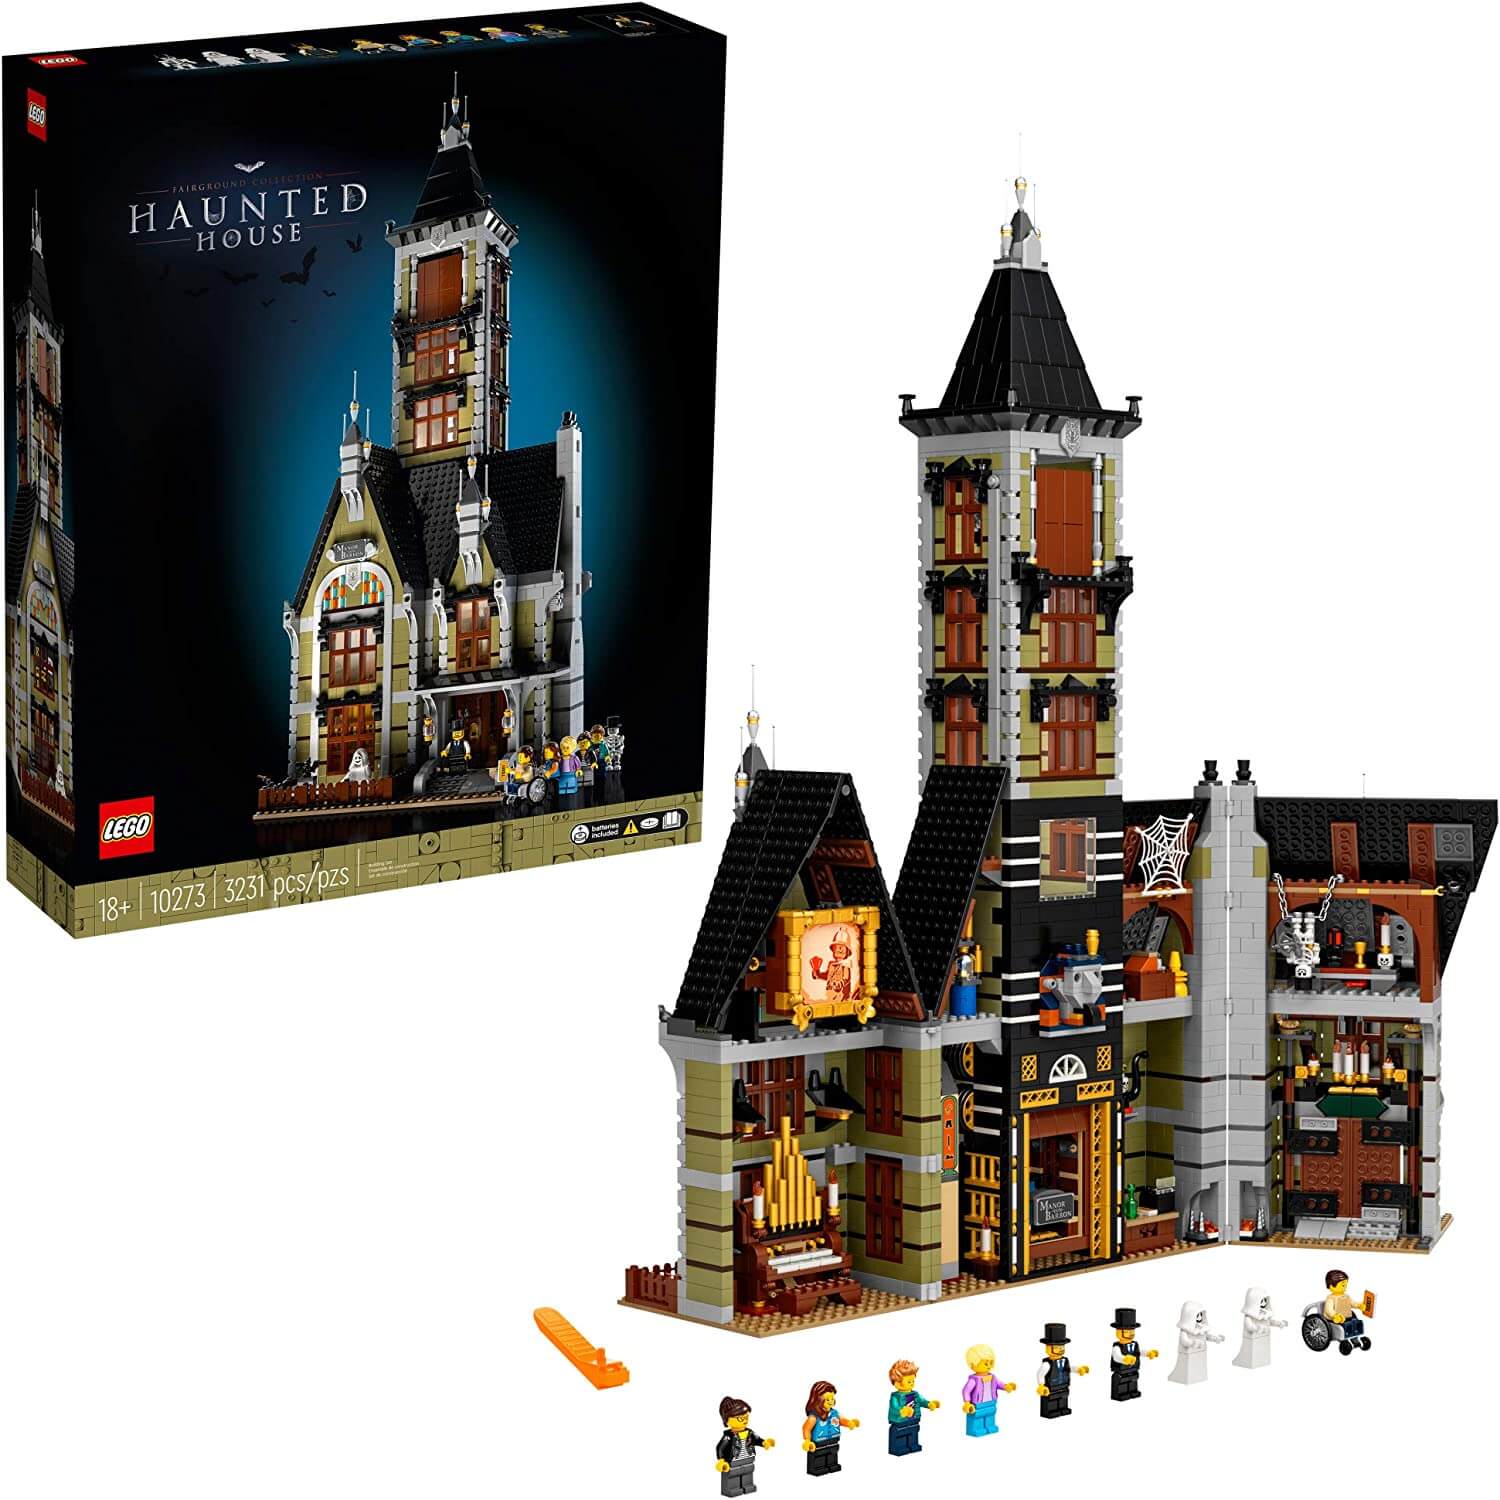 Конструктор Дом с привидениями 10273 LEGO Creator конструктор lego creator 10273 дом с привидениями 3231 дет